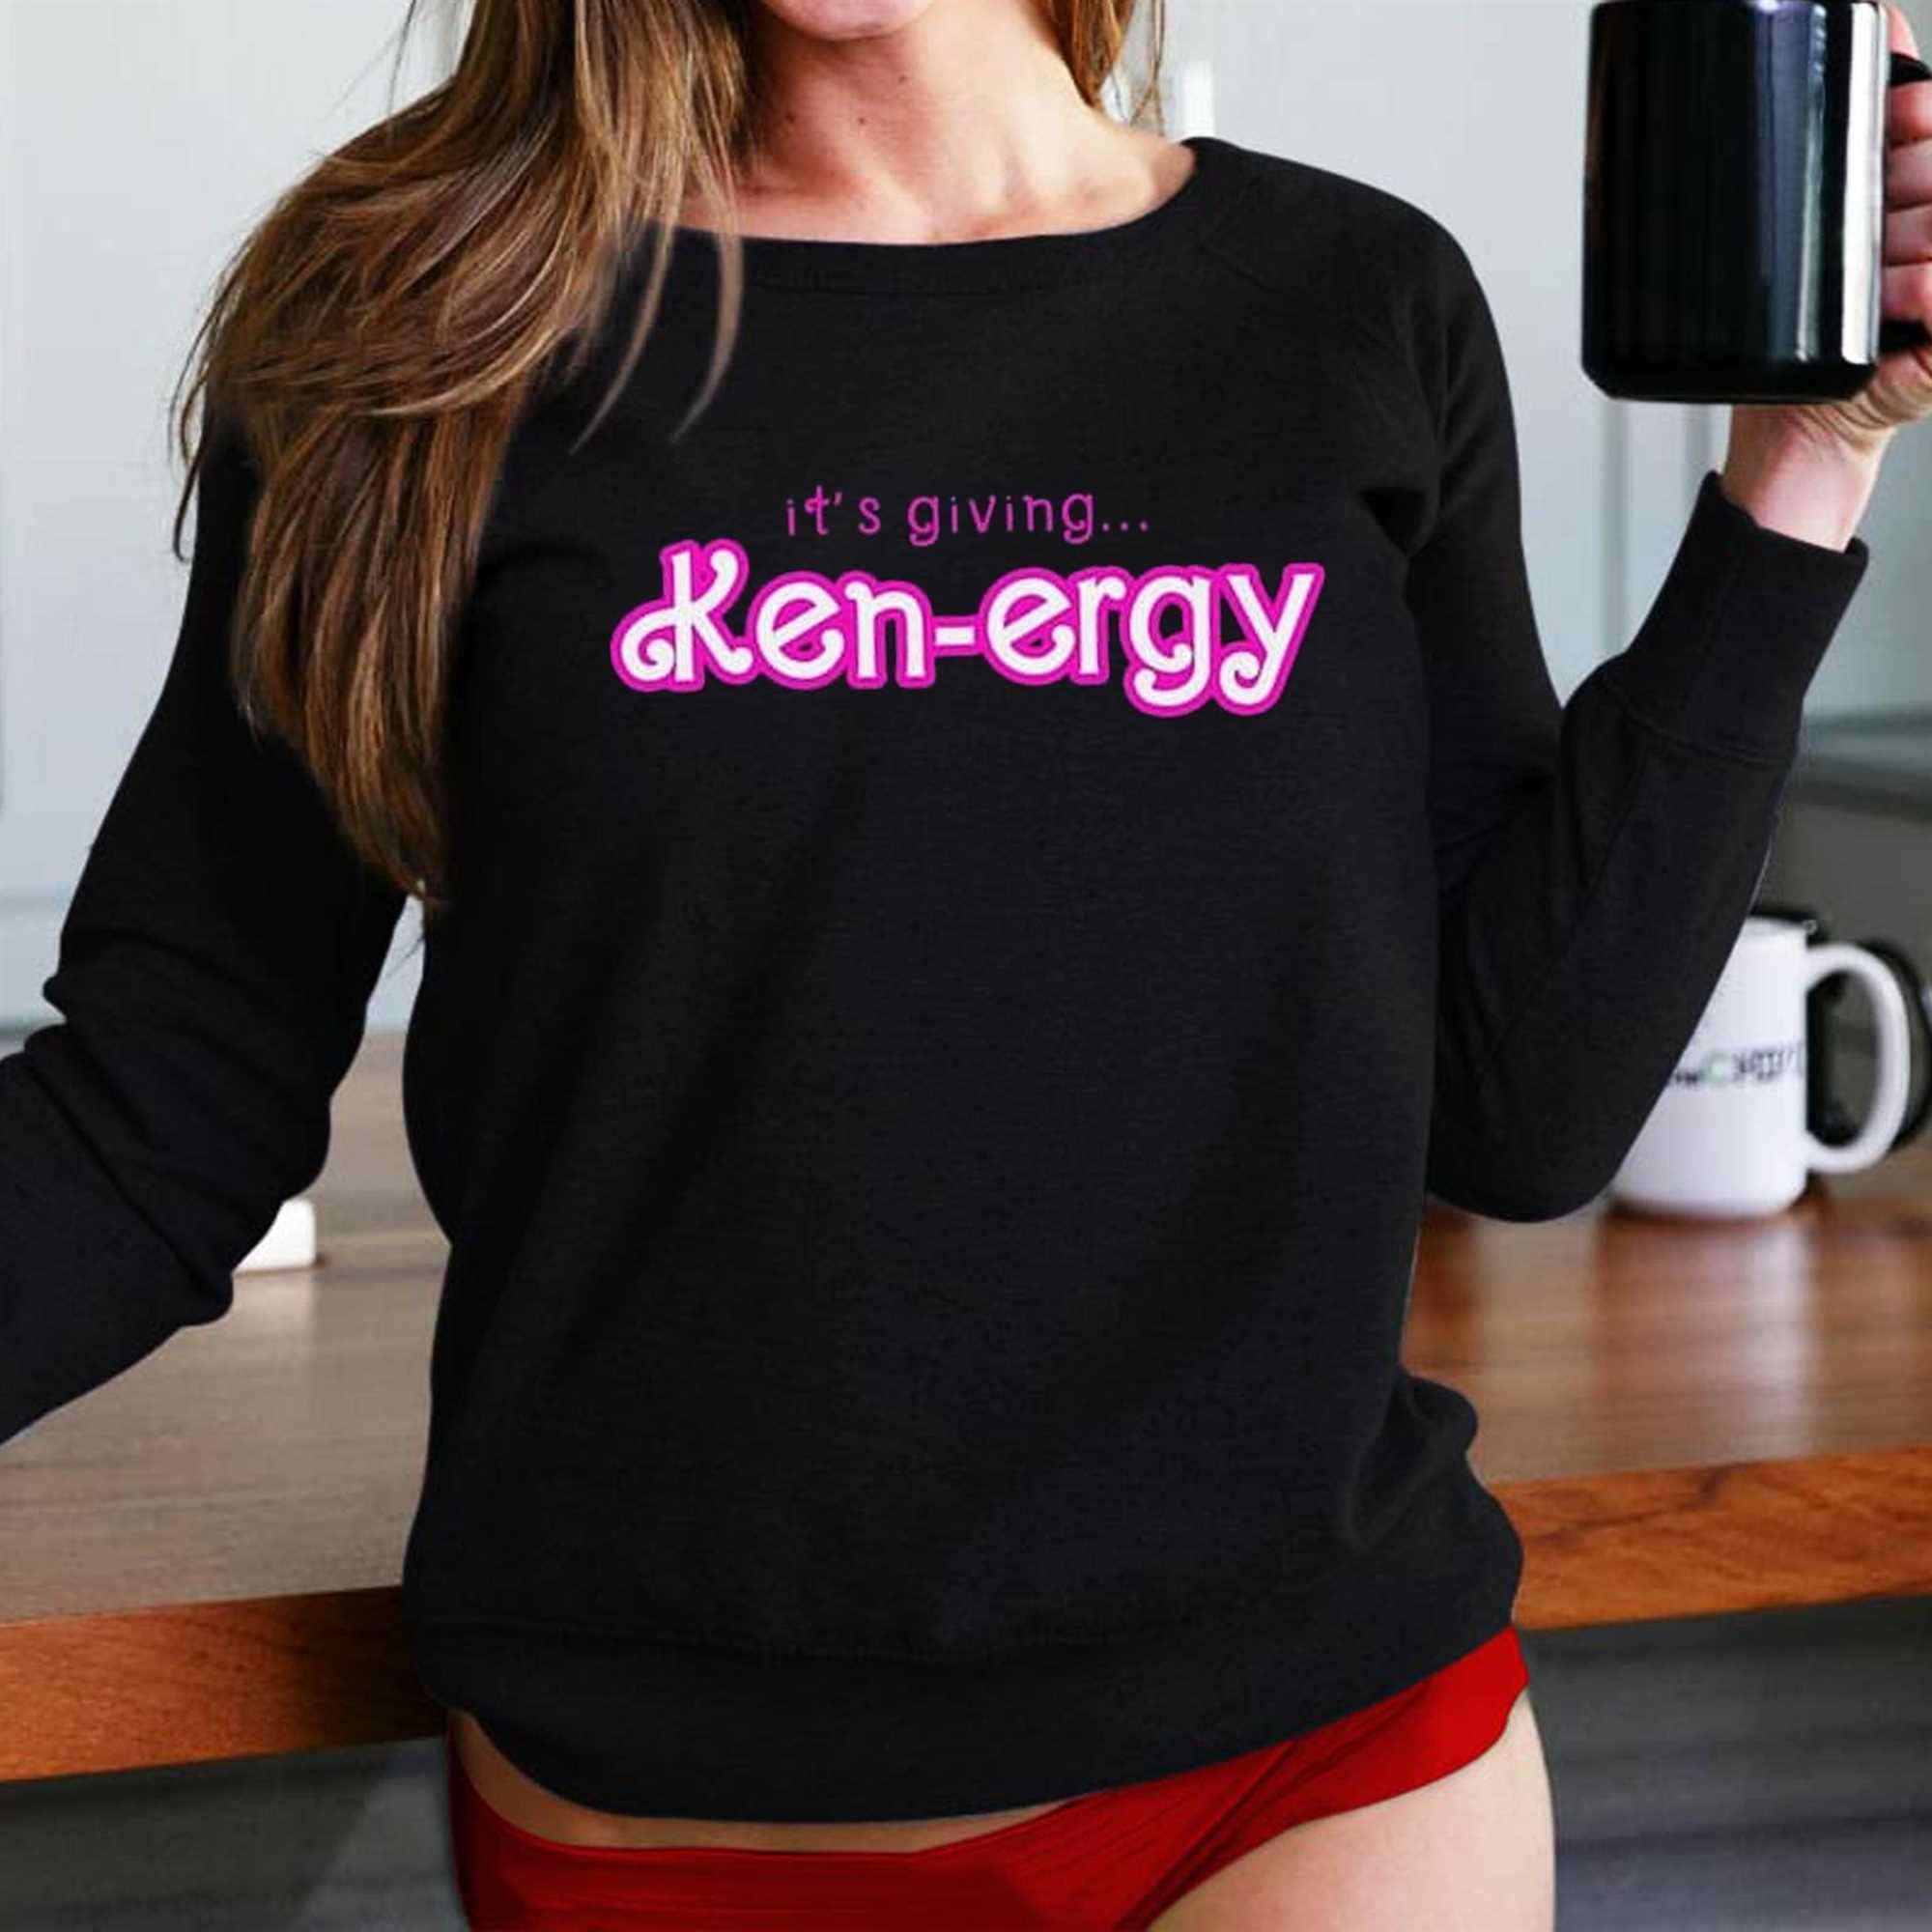 it's giving ken-ergy